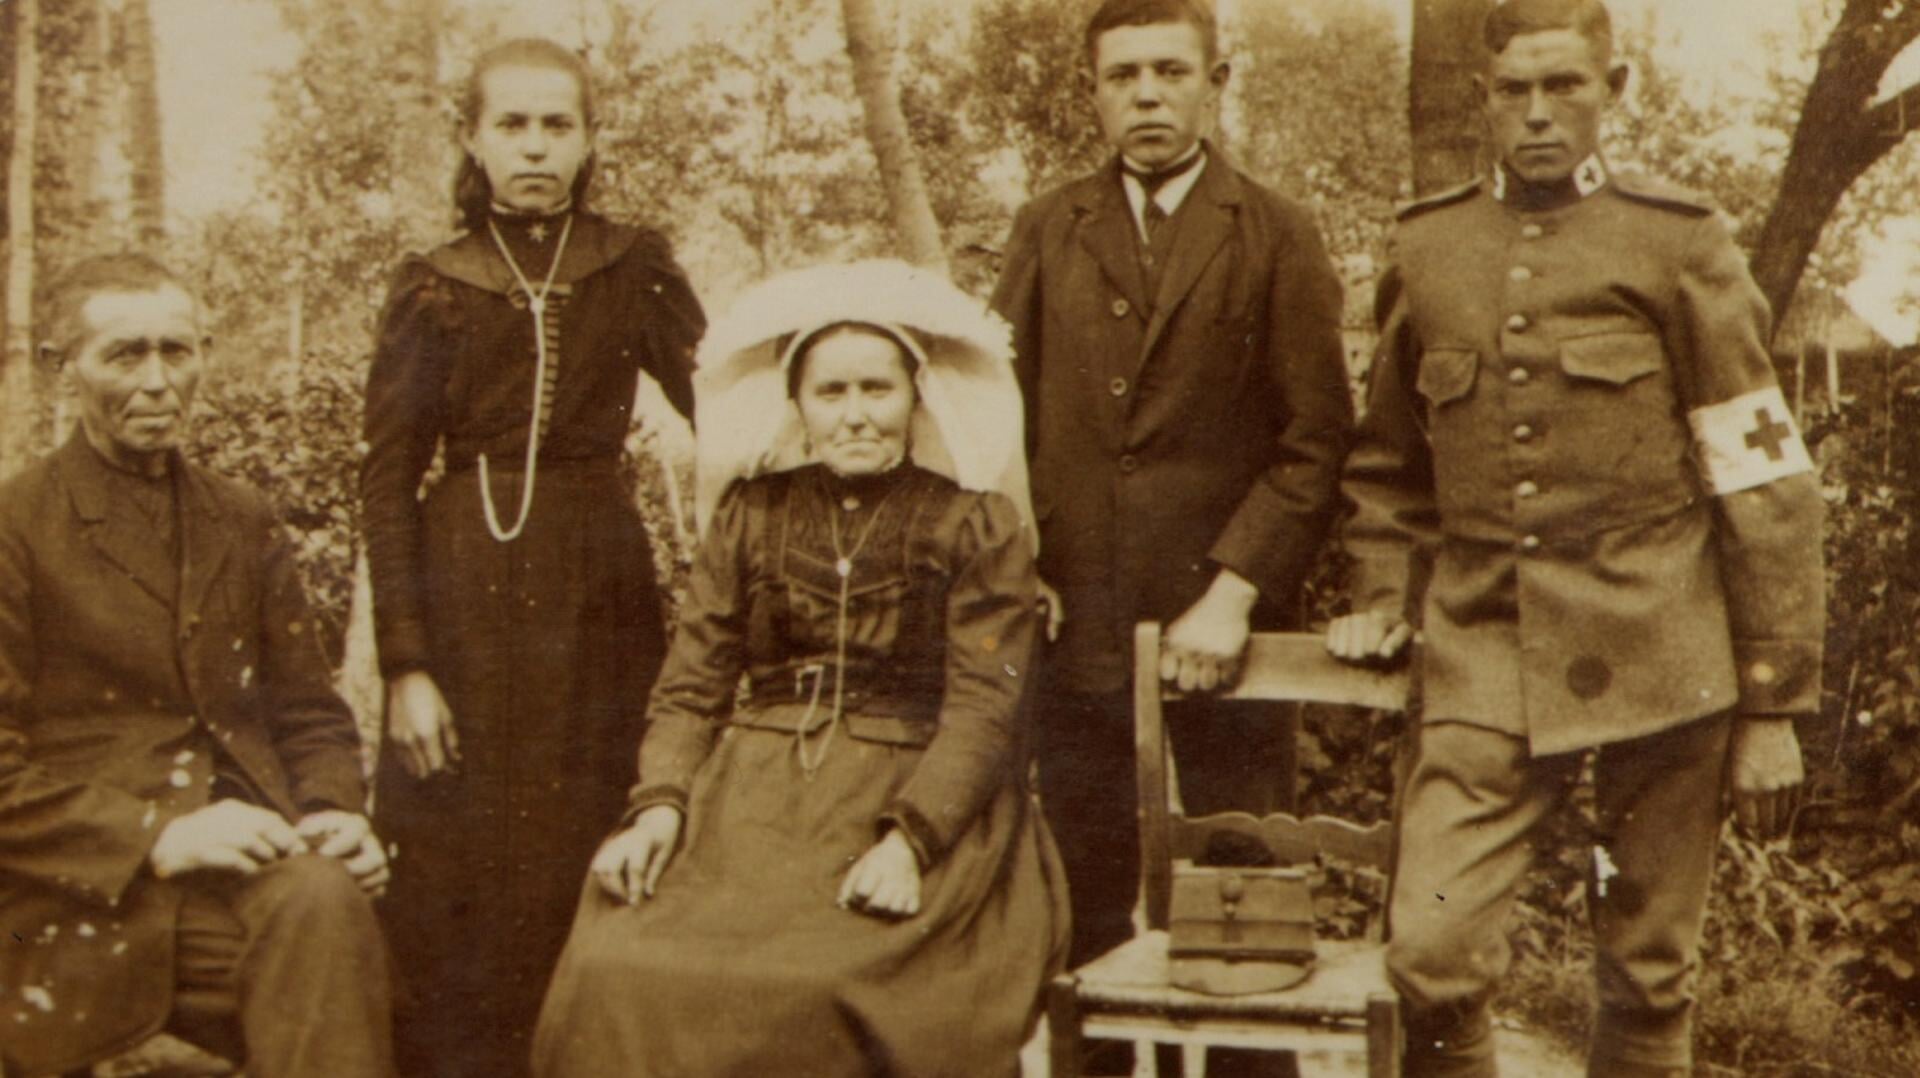 Rooise boerderijbewoners: familie Thomas Versantvoort (1861-1955), gehuwd
met Allegonda van Hoorn (1865-1943) (collectie Jo van der Kaaij)